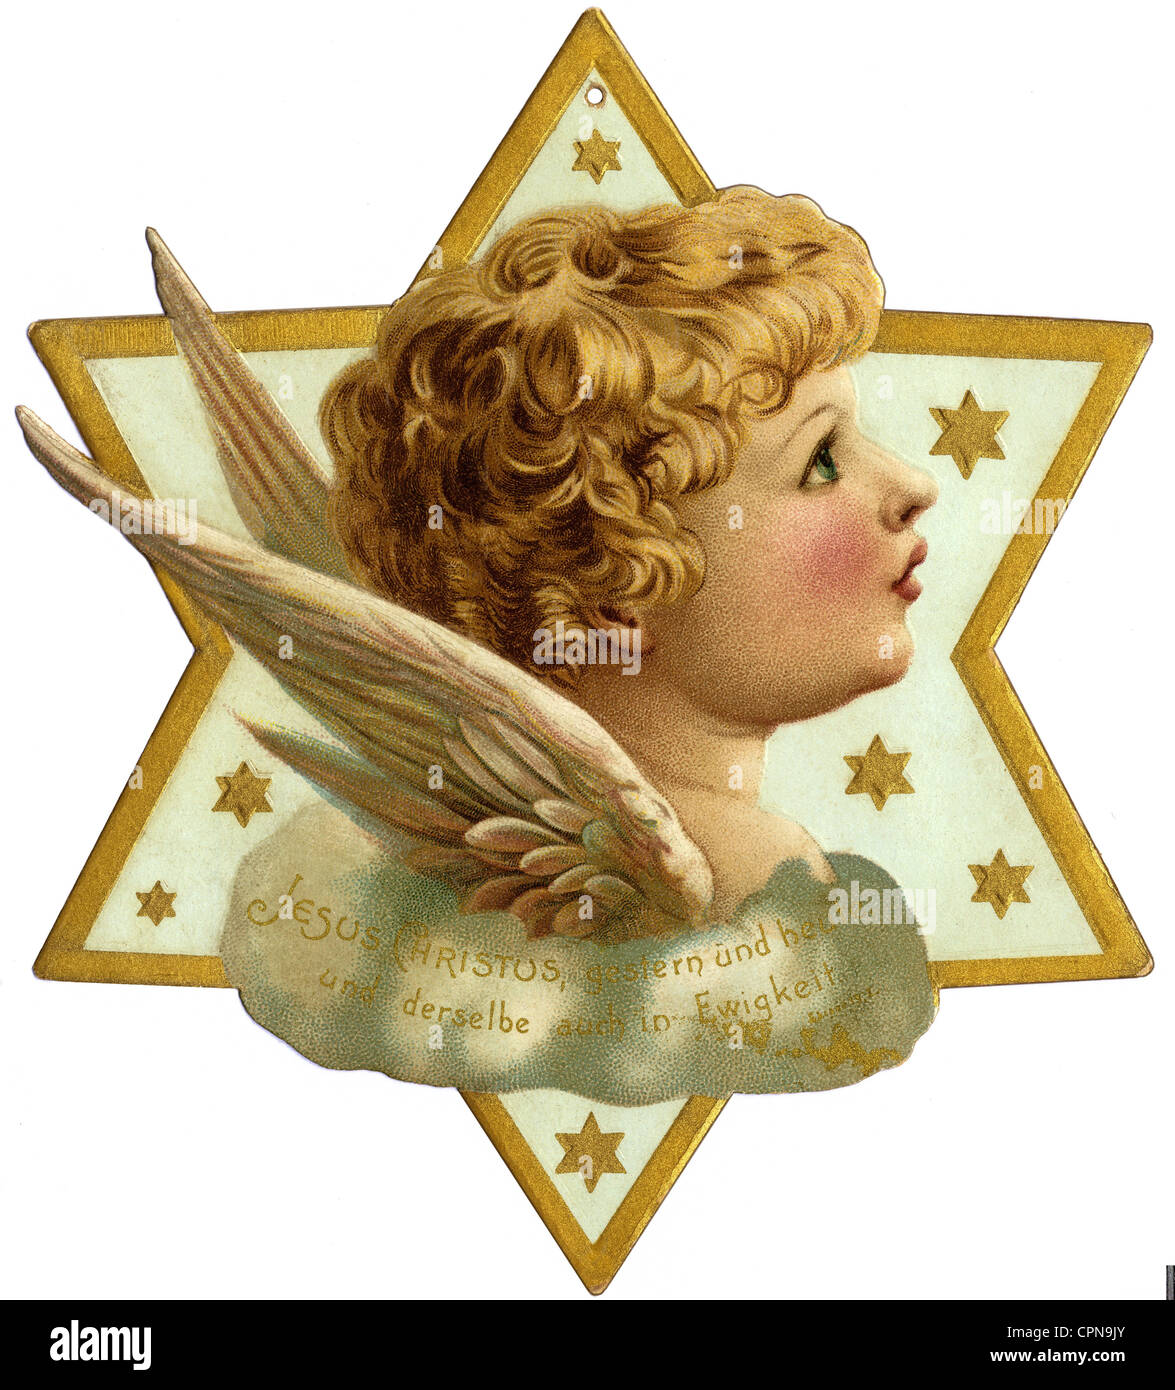 Weihnachten, Stern von Bethlehem mit Engel, Lithographie, Deutschland, um 1900, Zusatz-Rechte-Clearenzen-nicht vorhanden Stockfoto